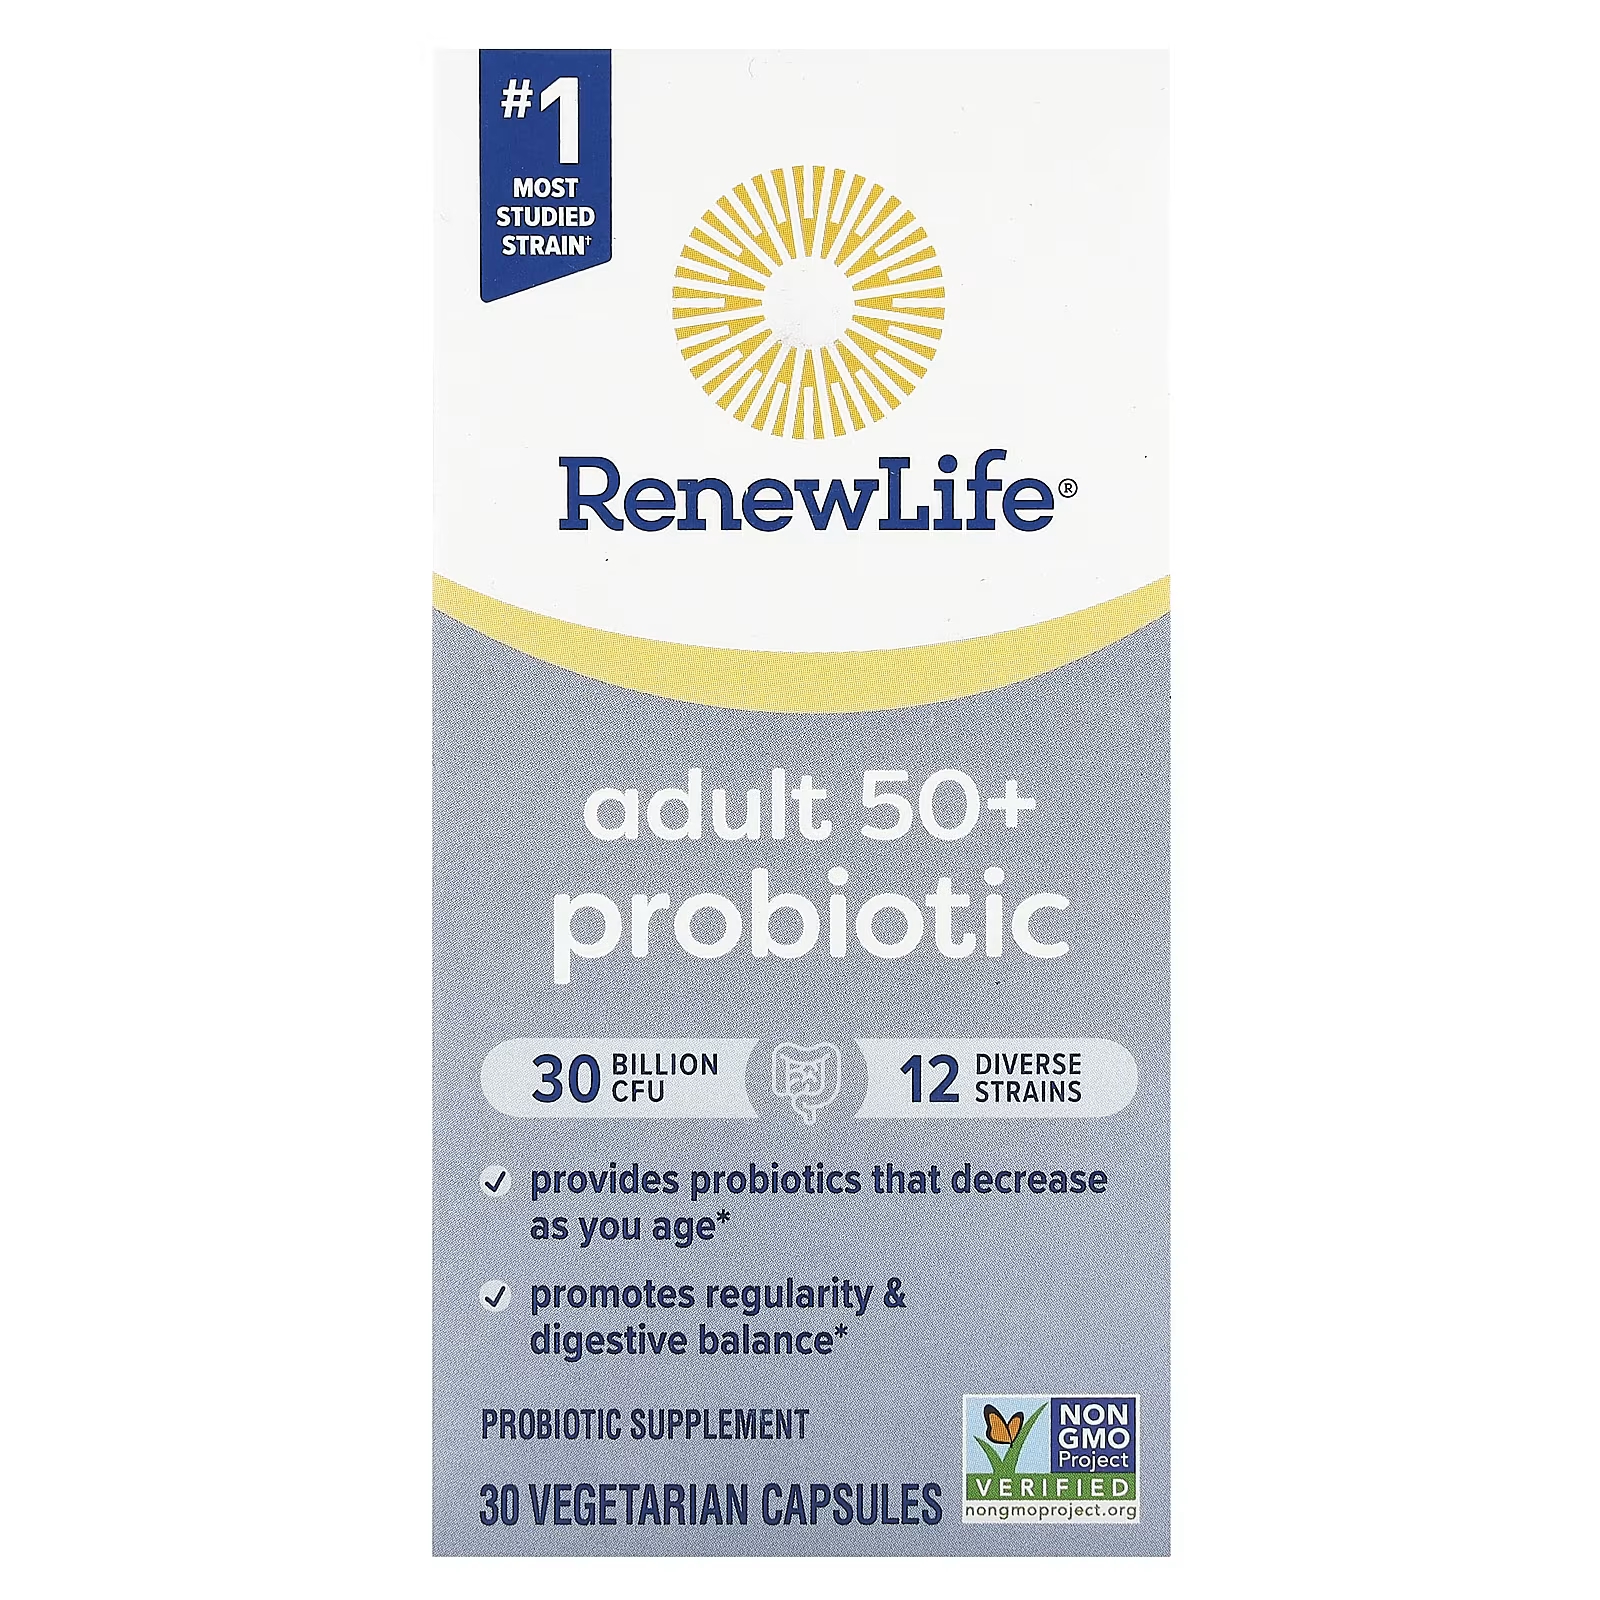 Пробиотик Renew Life для взрослых старше 50 лет, 30 миллиардов КОЕ, 30 вегетарианских капсул renew life ultimate flora пробиотик для взрослых старше 50 лет 30 млрд кое 90 вегетарианских капсул